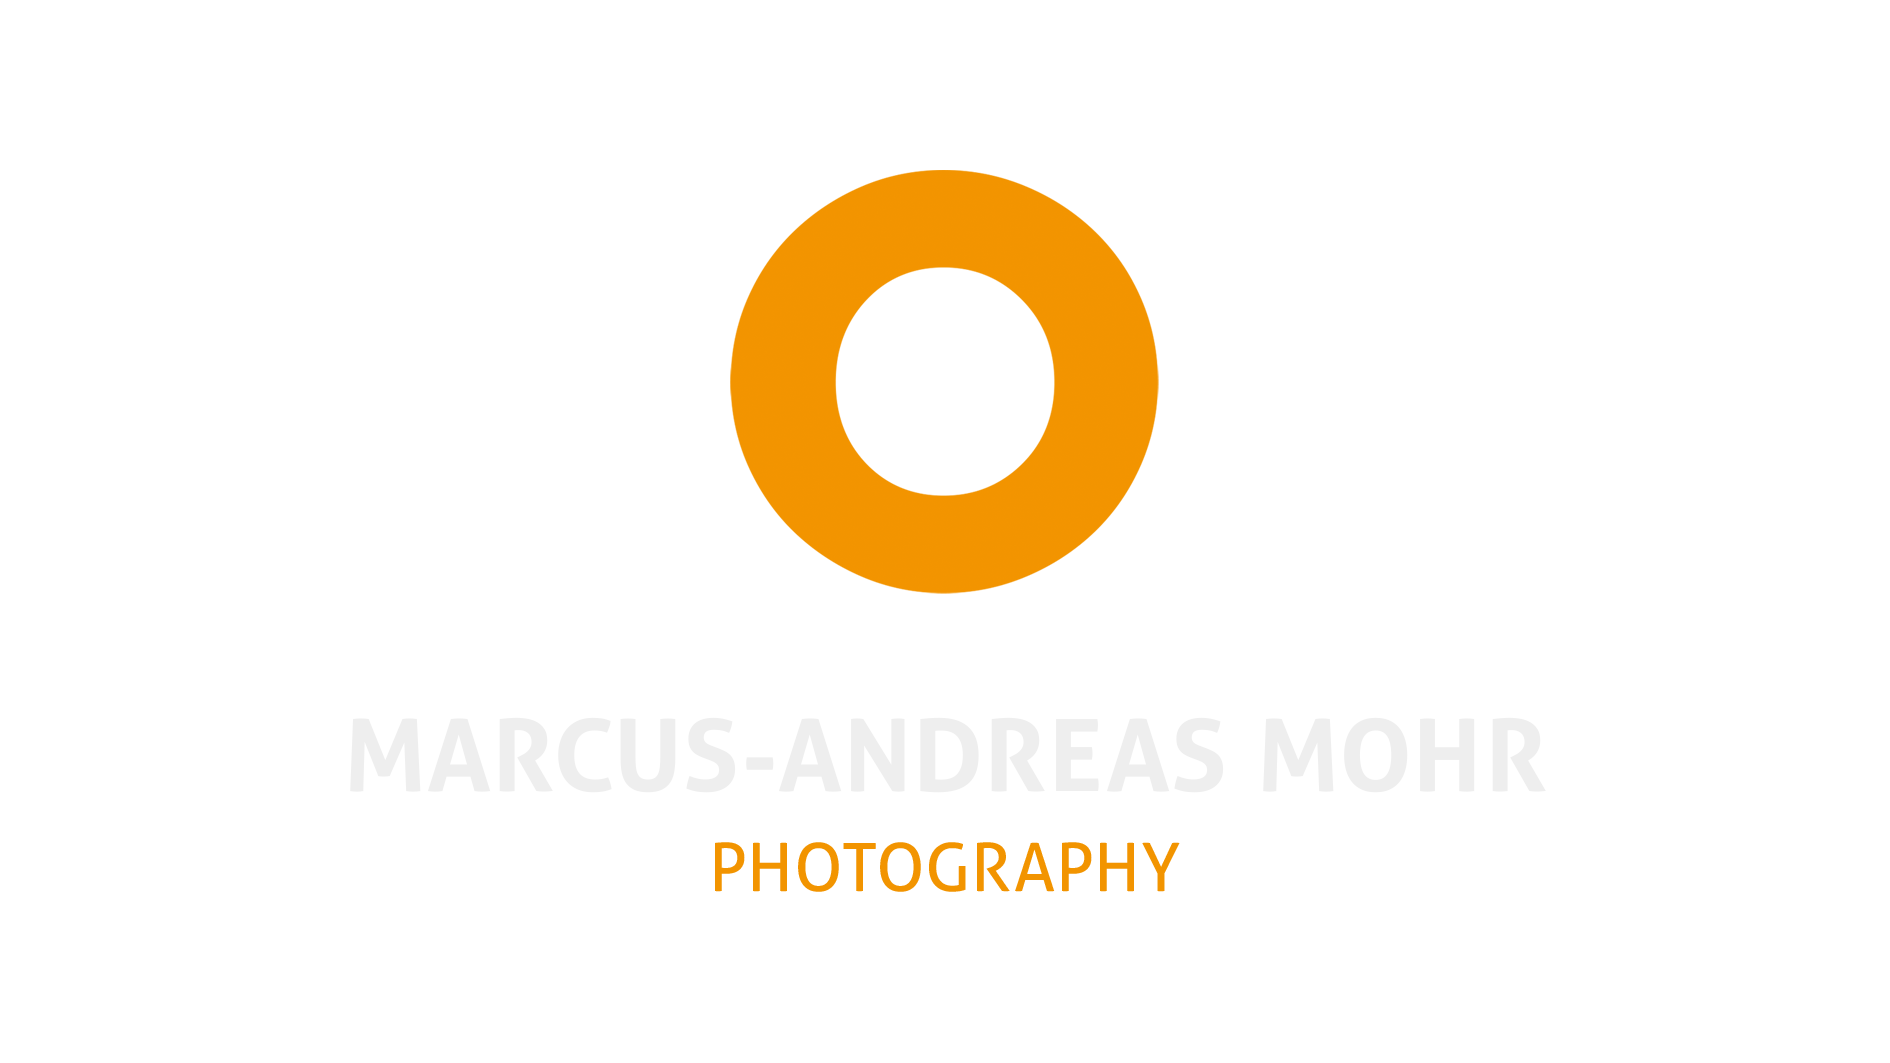 MARCUS-ANDREAS MOHR